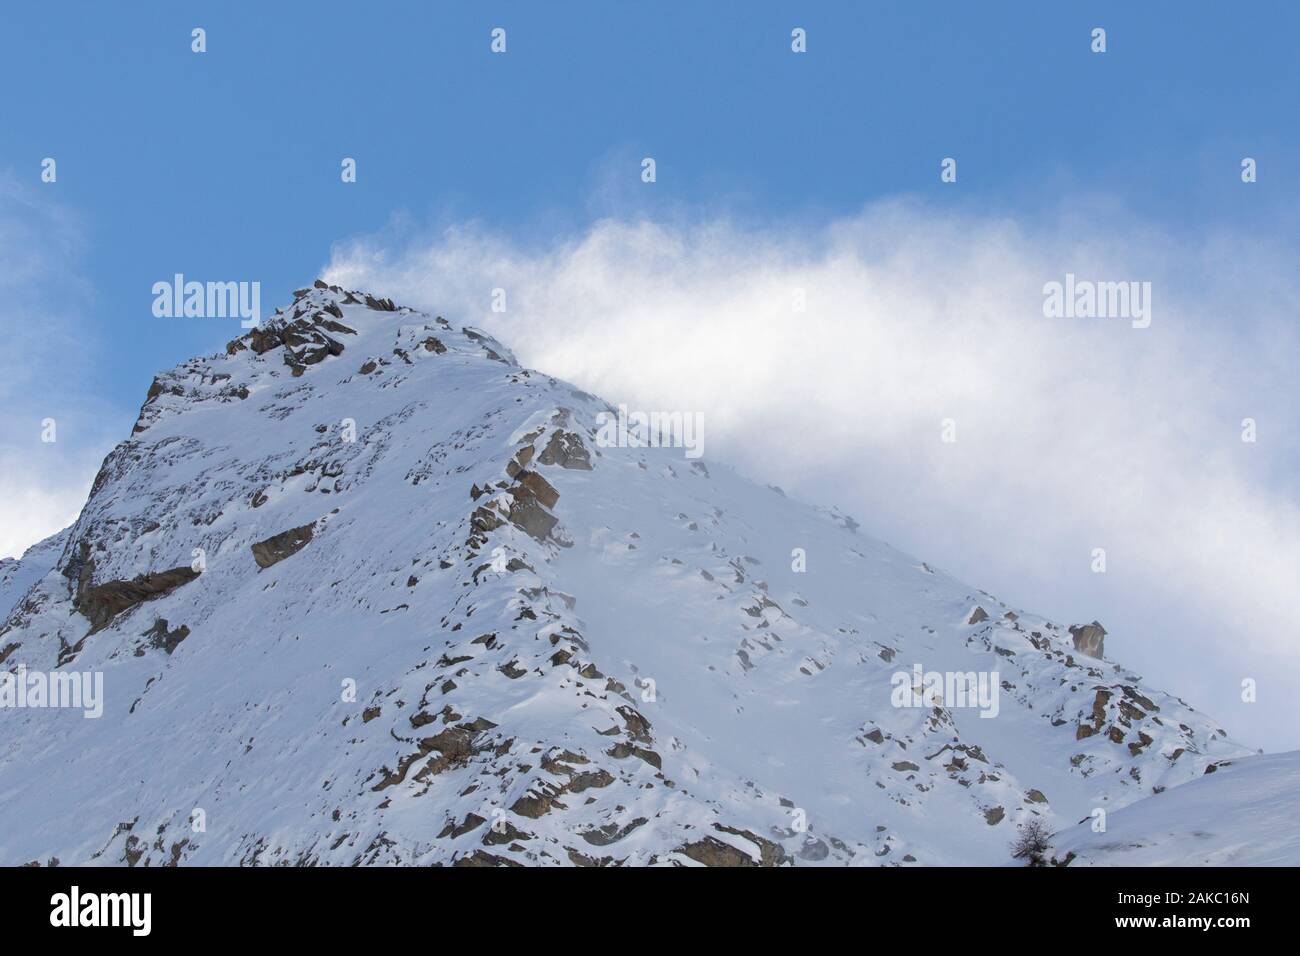 Haut de la montagne couverte de neige / pinnacle CIMA dell'Arolley en hiver dans le massif du Gran Paradiso Graian Alps, vallée d'aoste, Italie Banque D'Images